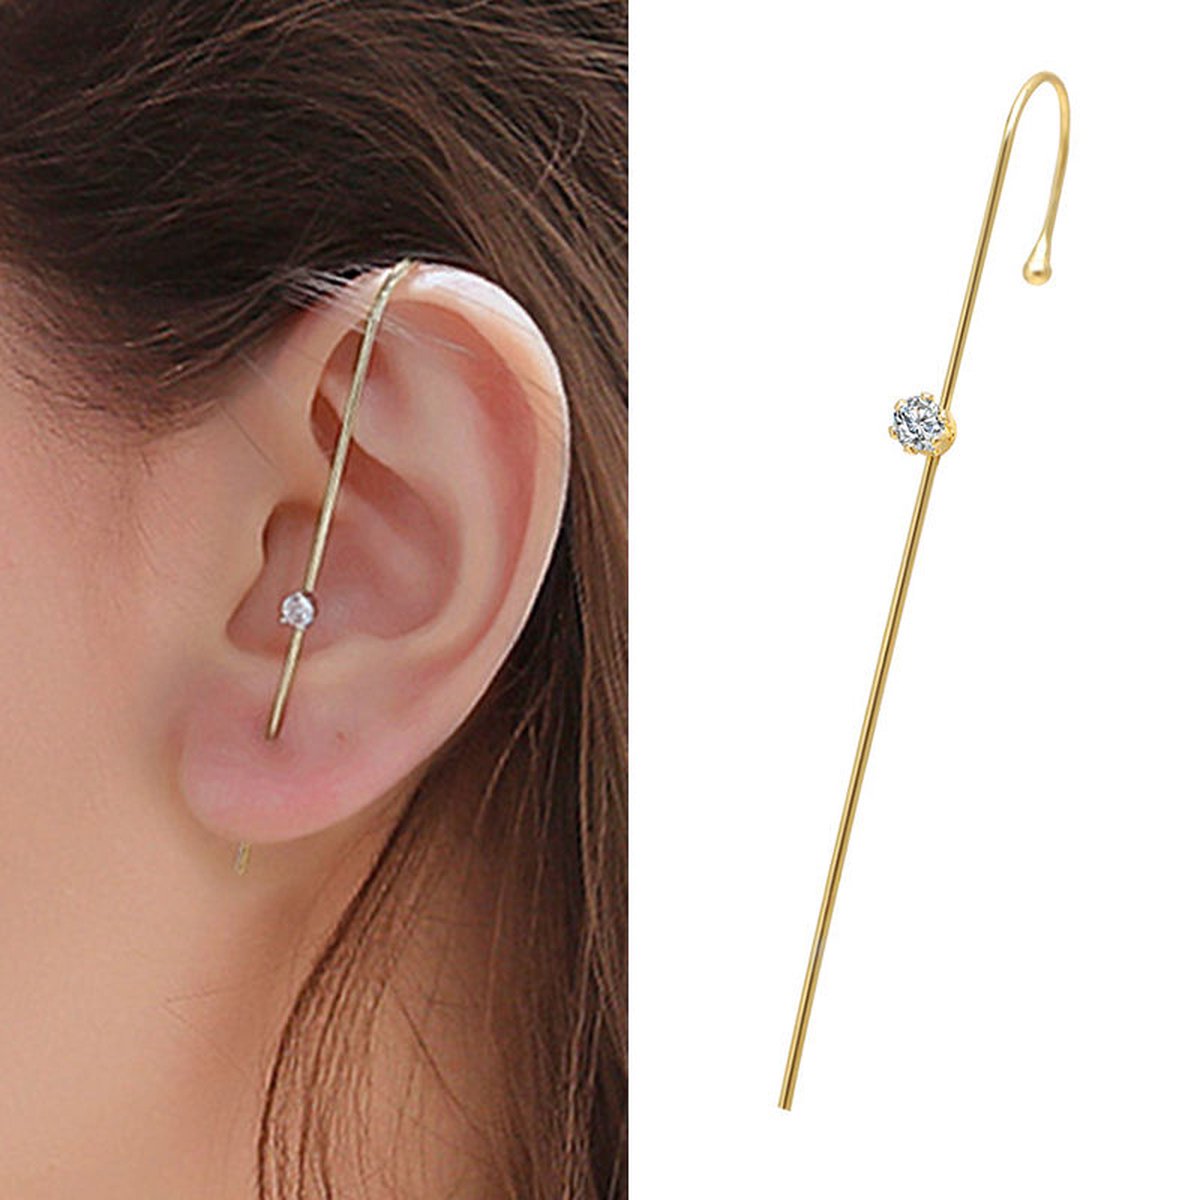 Dear Lune - Earring Piercing - 1 piece - Oorbel - Hook Earrings - Zirconia - Simple - Elegant - Style 001